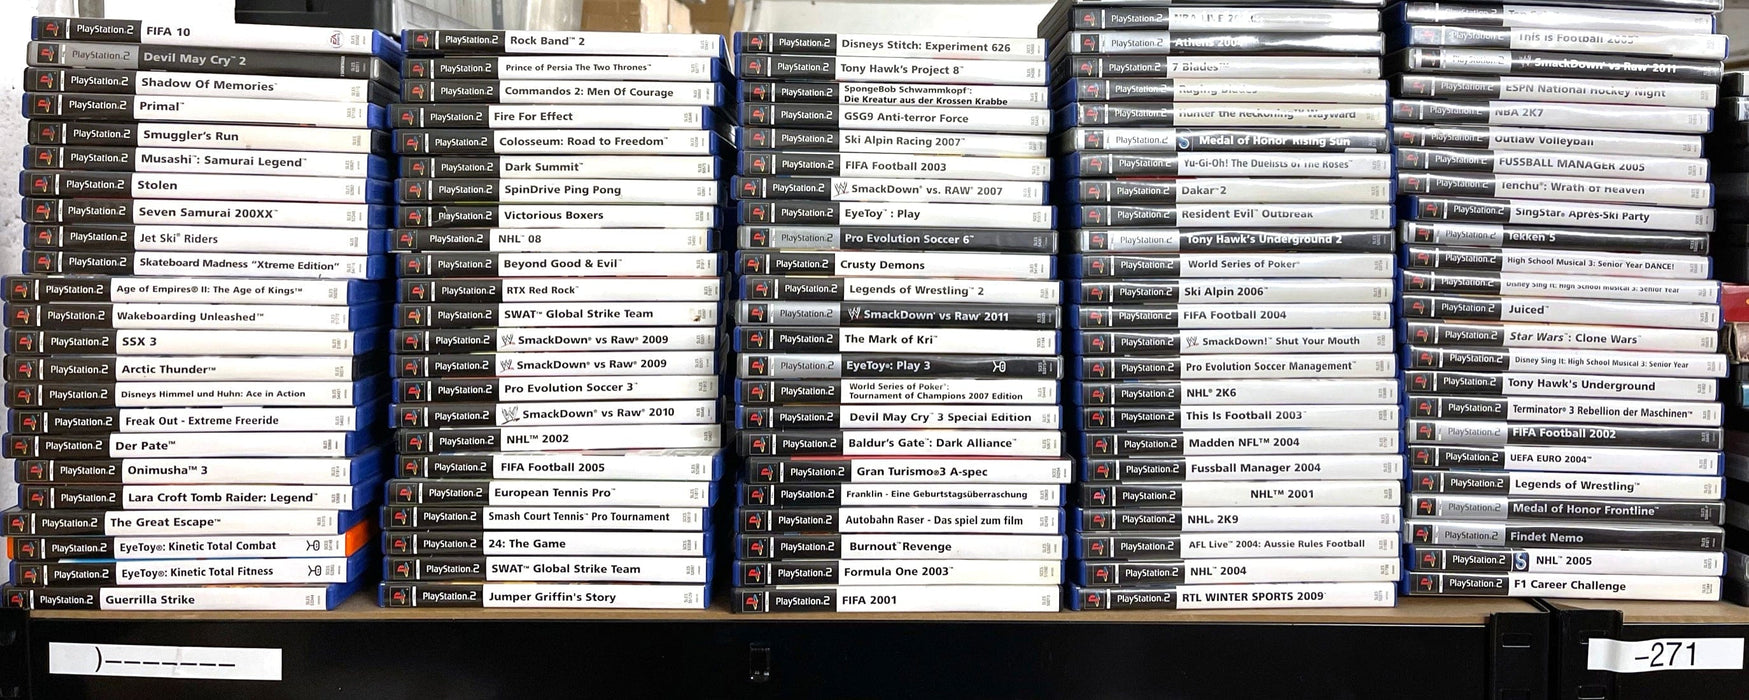 Glaciergames PlayStation 2 Game Gran Turismo 3: A-spec PlayStation 2 (Nr.180)